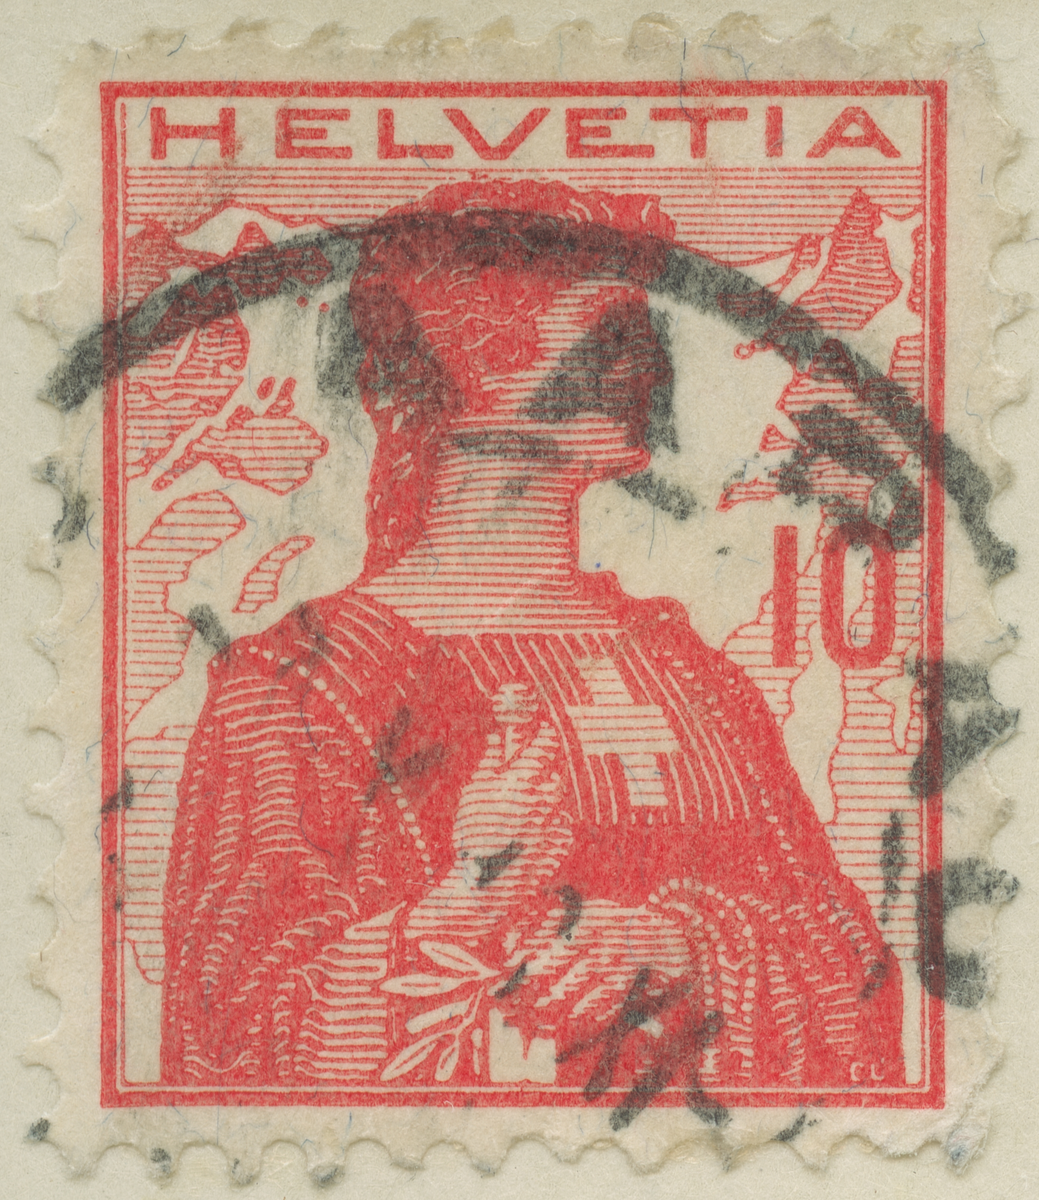 Frimärke ur Gösta Bodmans filatelistiska motivsamling, påbörjad 1950.
Frimärke från Schweiz, 1909. Motiv av Helvetia